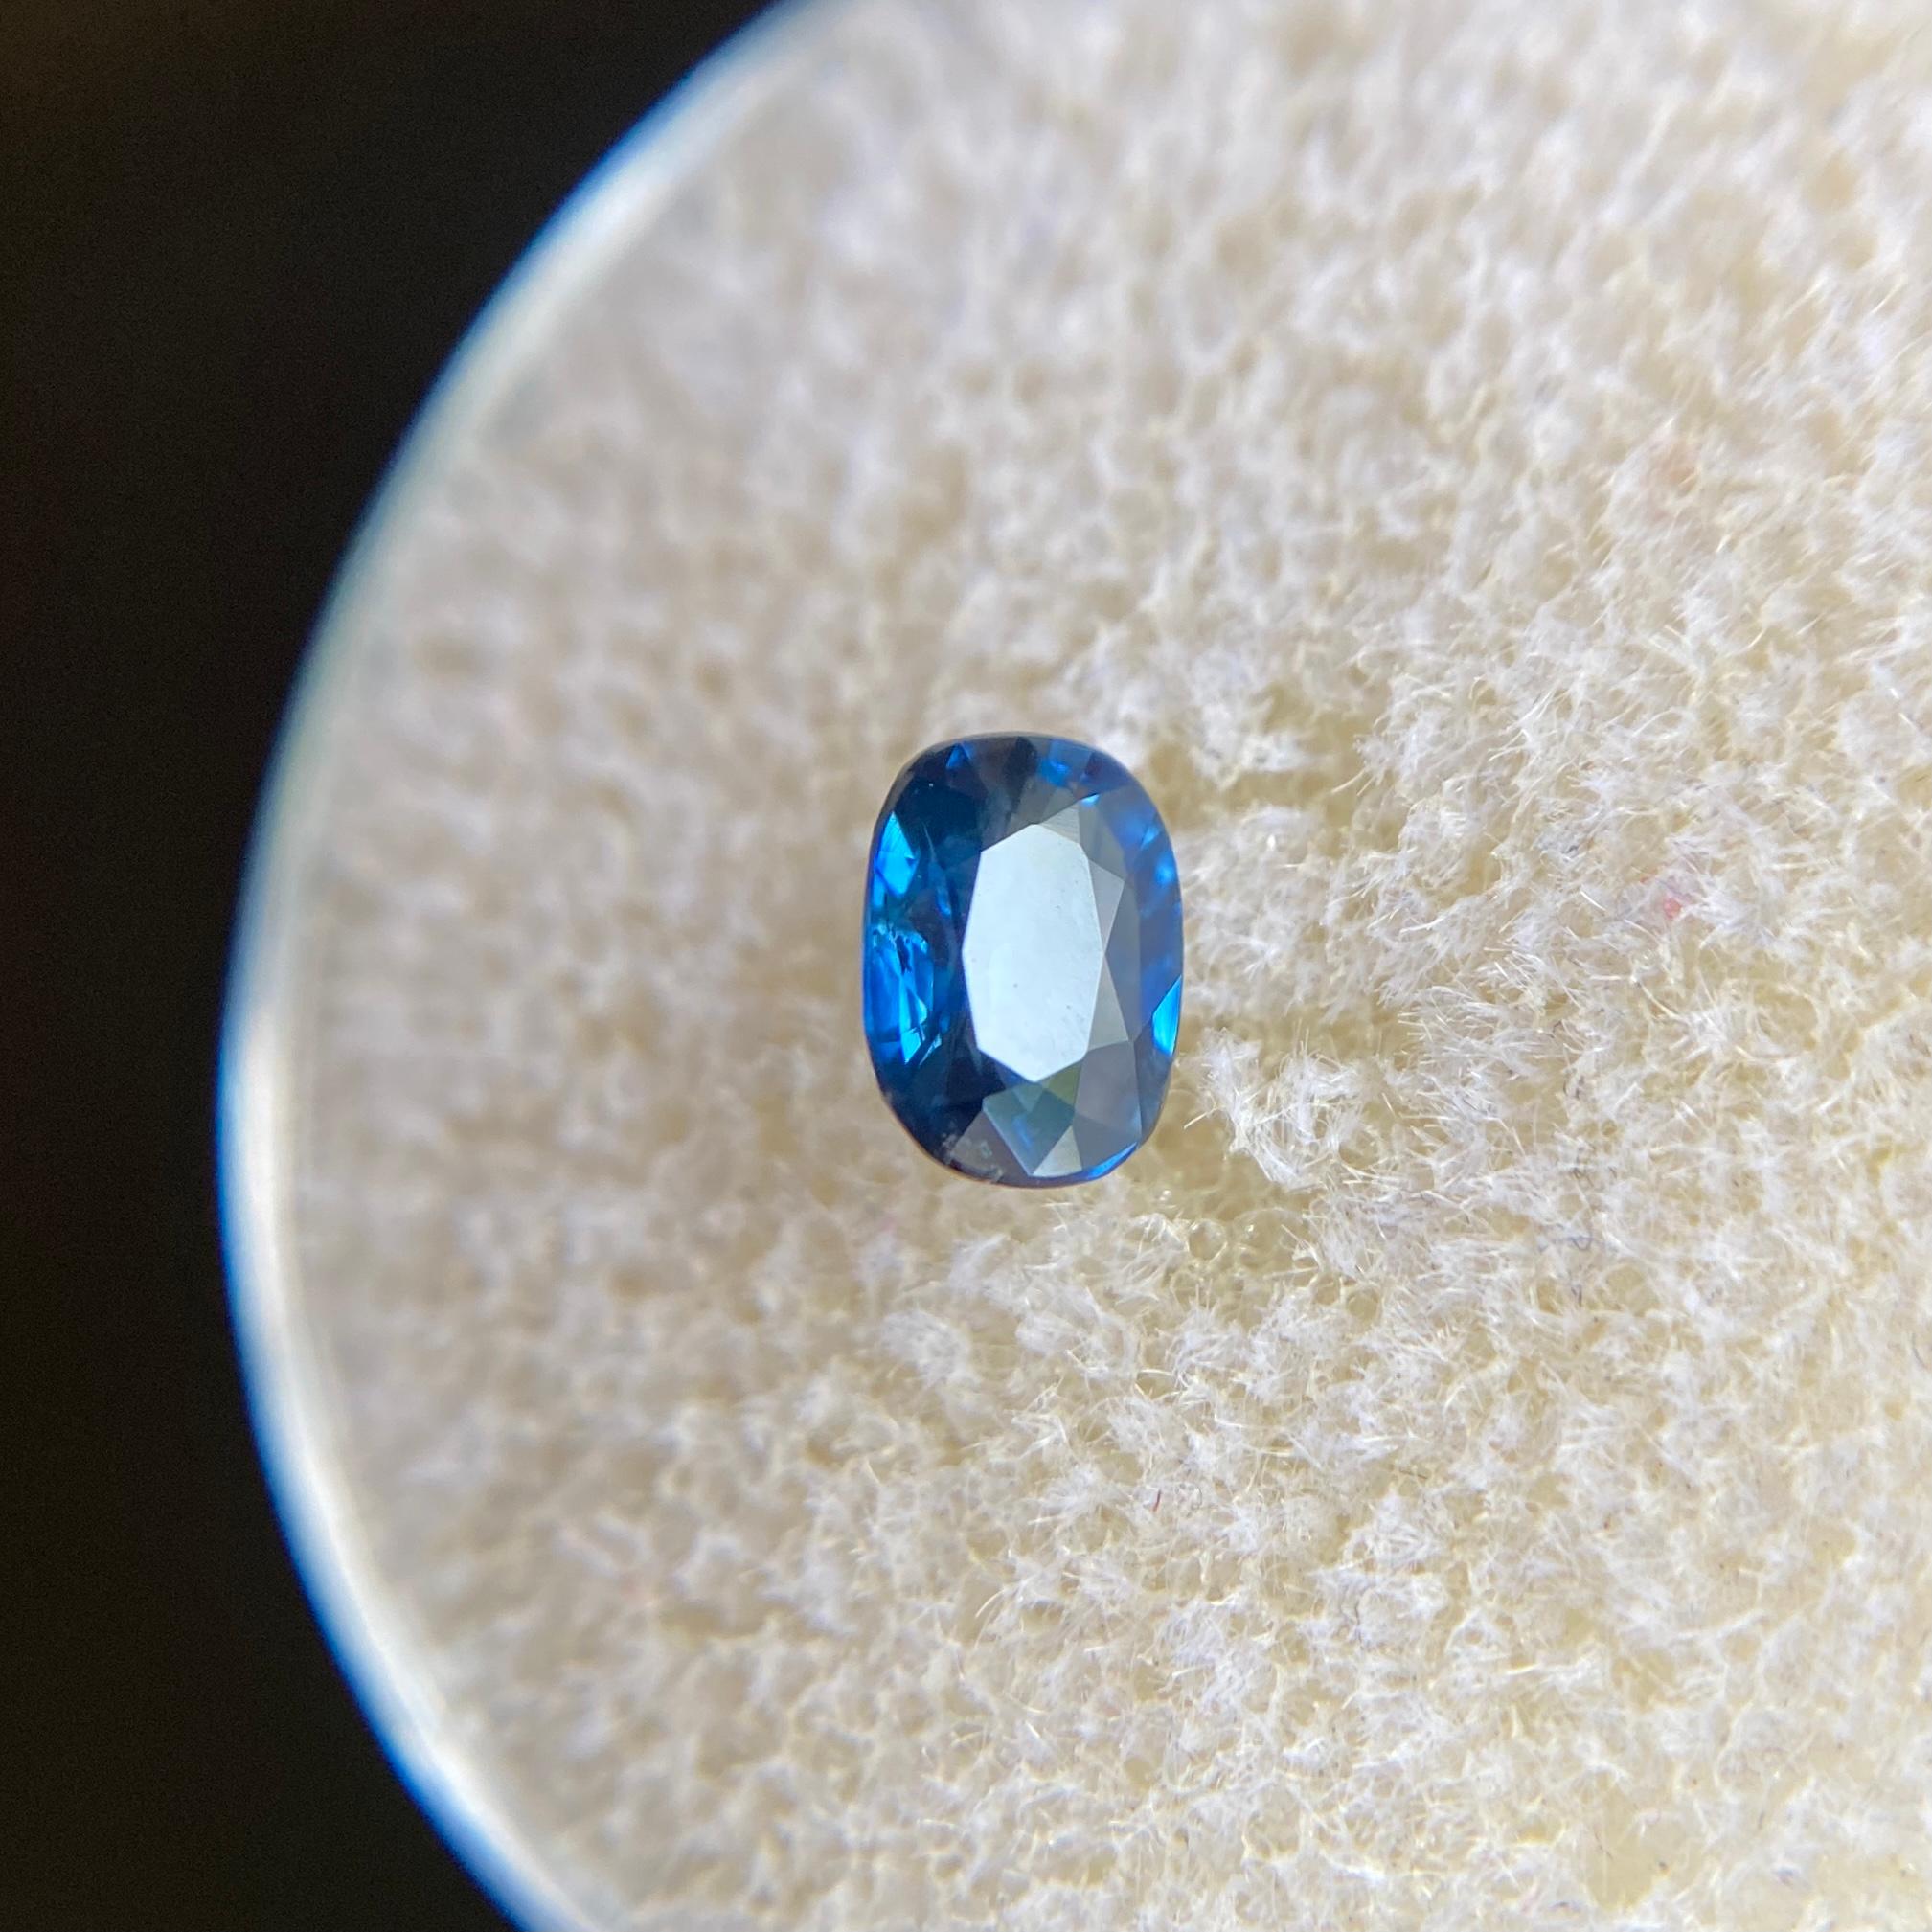 Deep Blue Australia Sapphire 0.56ct Cushion Cut Rare Loose Gem 2